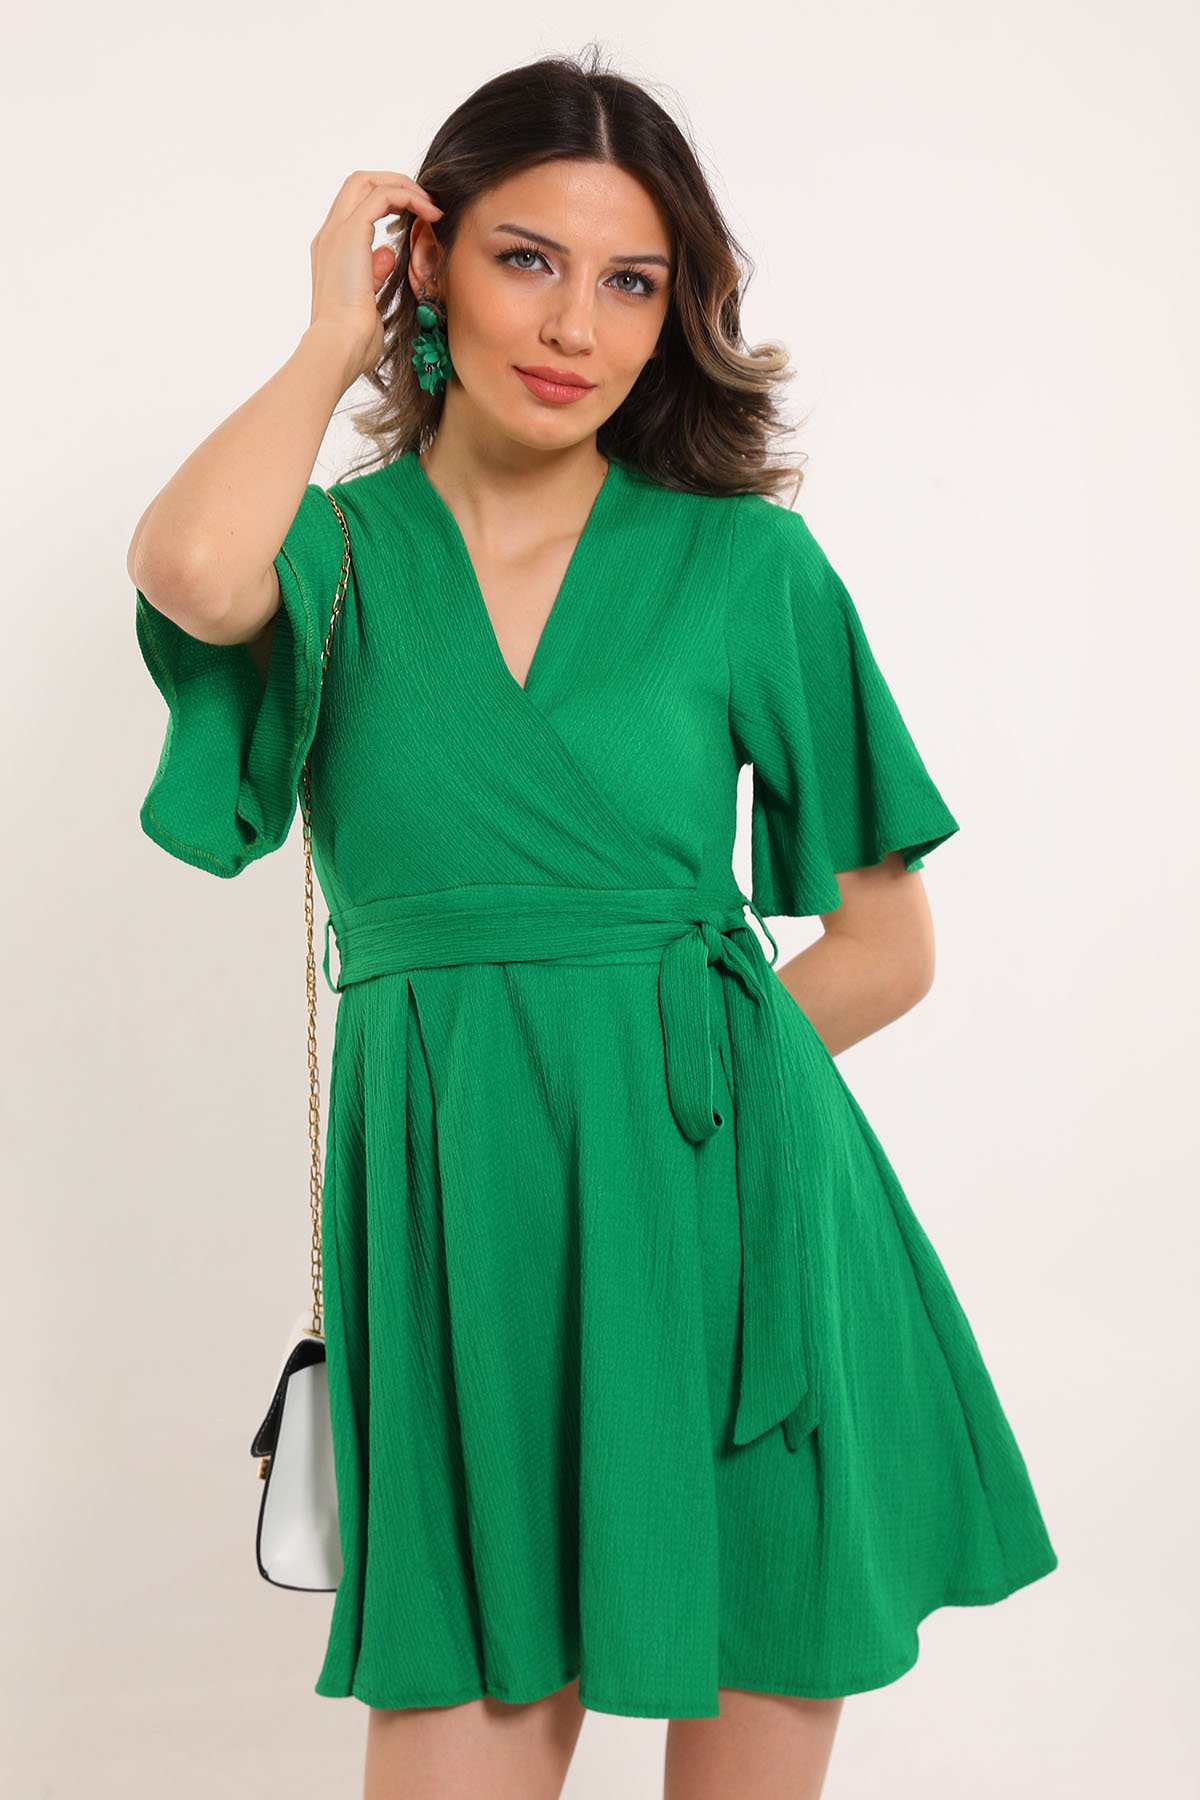 Kadın Kravuze Yaka Kuşaklı Şortlu Elbise Yeşil 496997 - tozlu.com